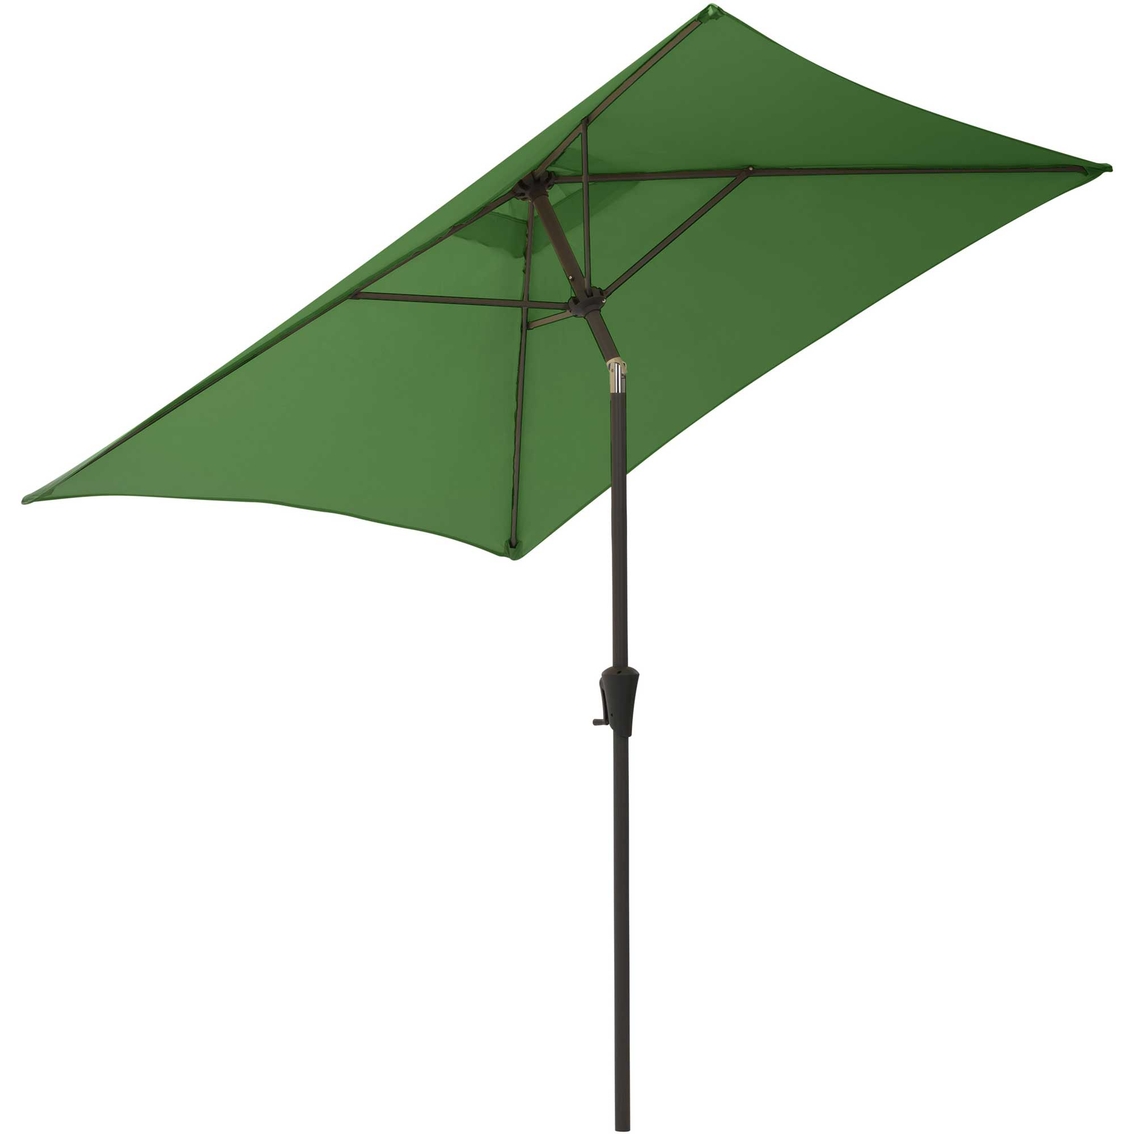 CorLiving 9 ft. Square Tilting Patio Umbrella - Image 2 of 8